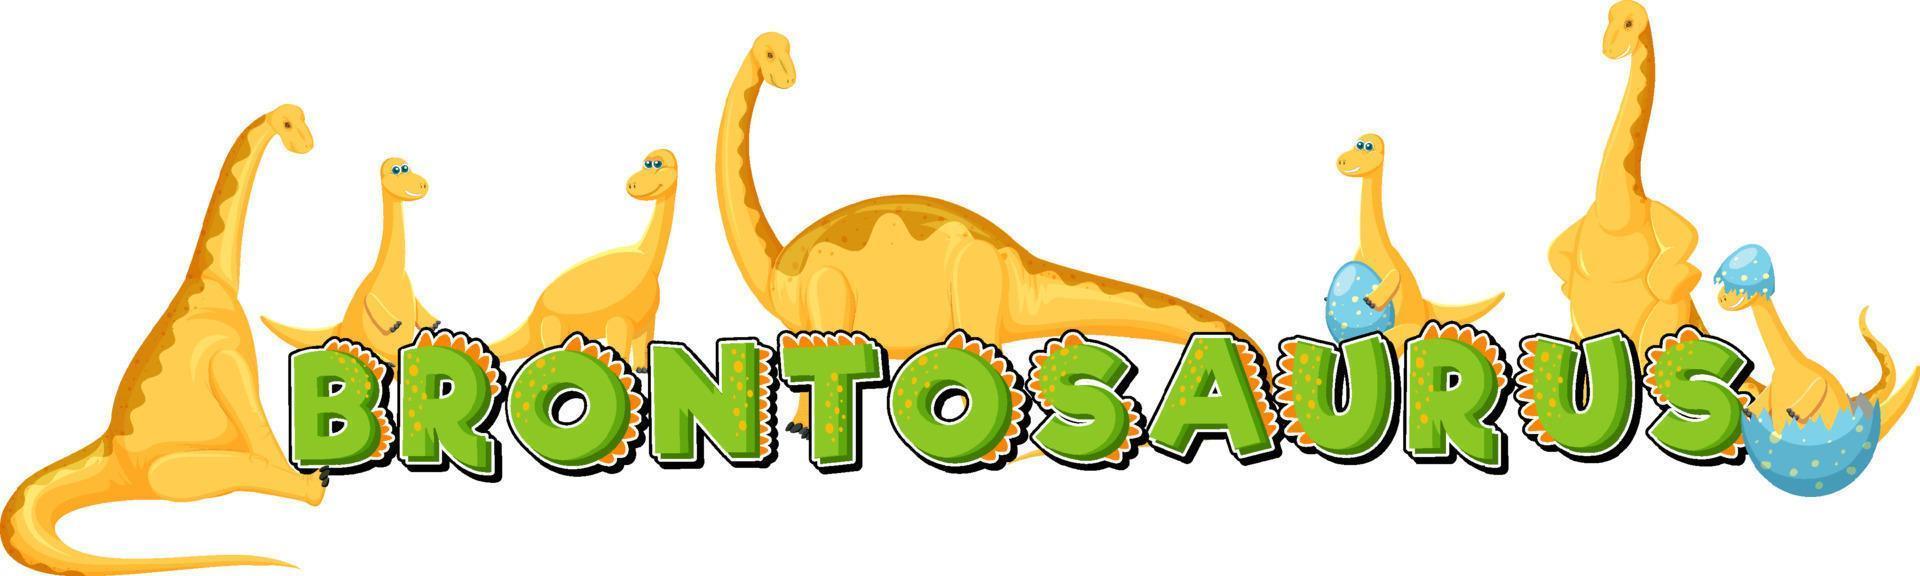 dinossauro brontossauro fofo e personagem de desenho animado de bebê vetor